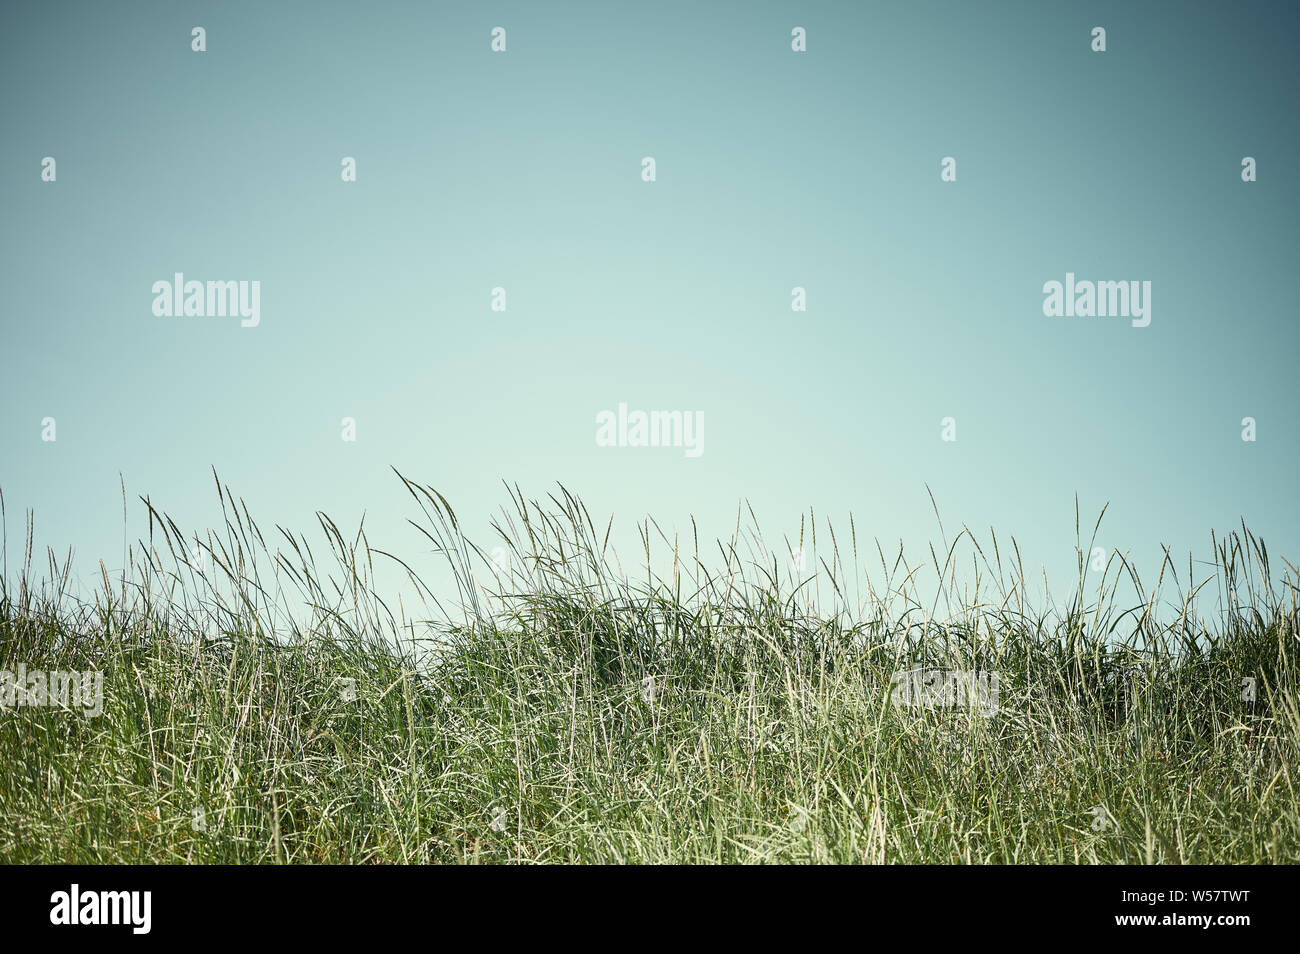 El verano en Islandia concepto intacto con hierba alta pradera y el azul claro del cielo Foto de stock